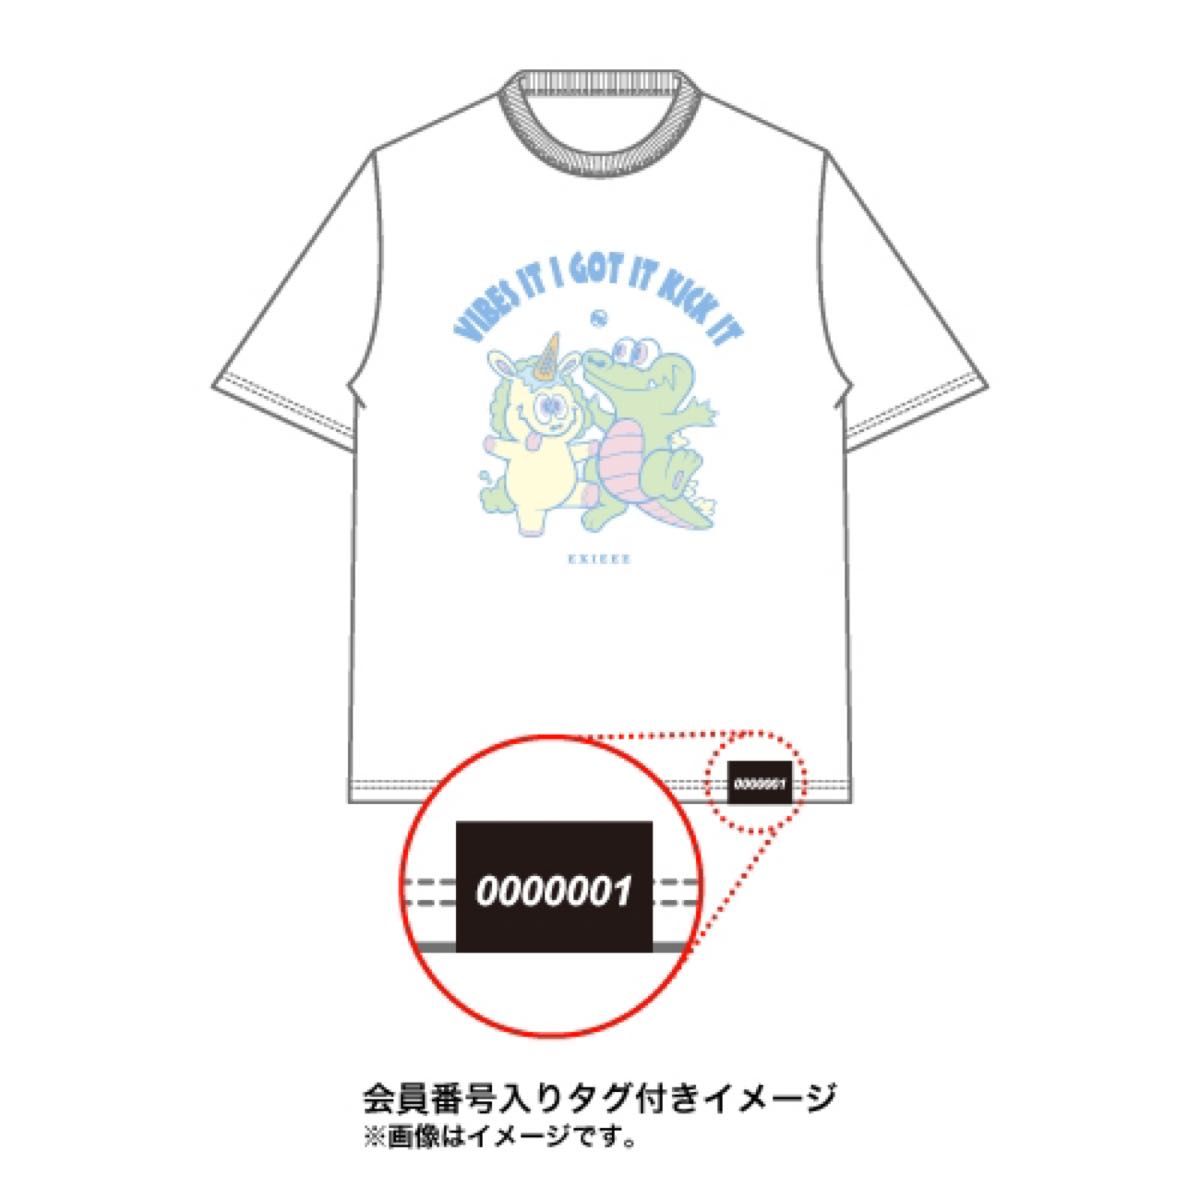 【受注生産終了・未開封新品】EXITファンクラブ限定EXIEEEワニ&ユニコーンTシャツ ホワイト